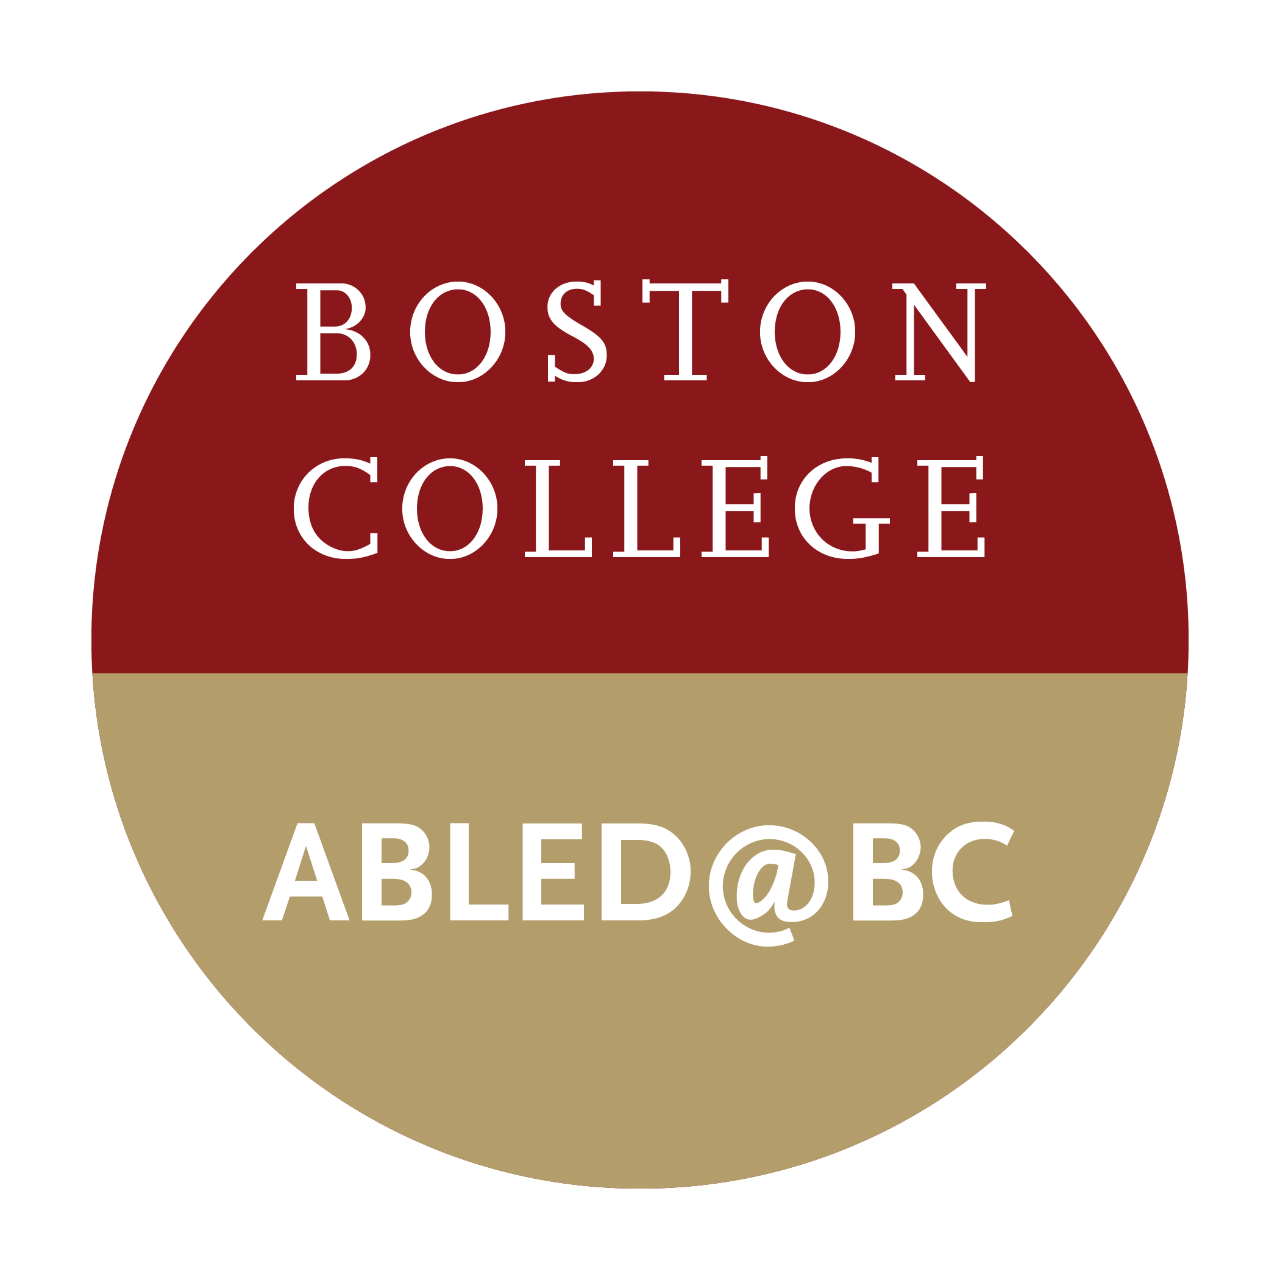 Abled@BC Logo